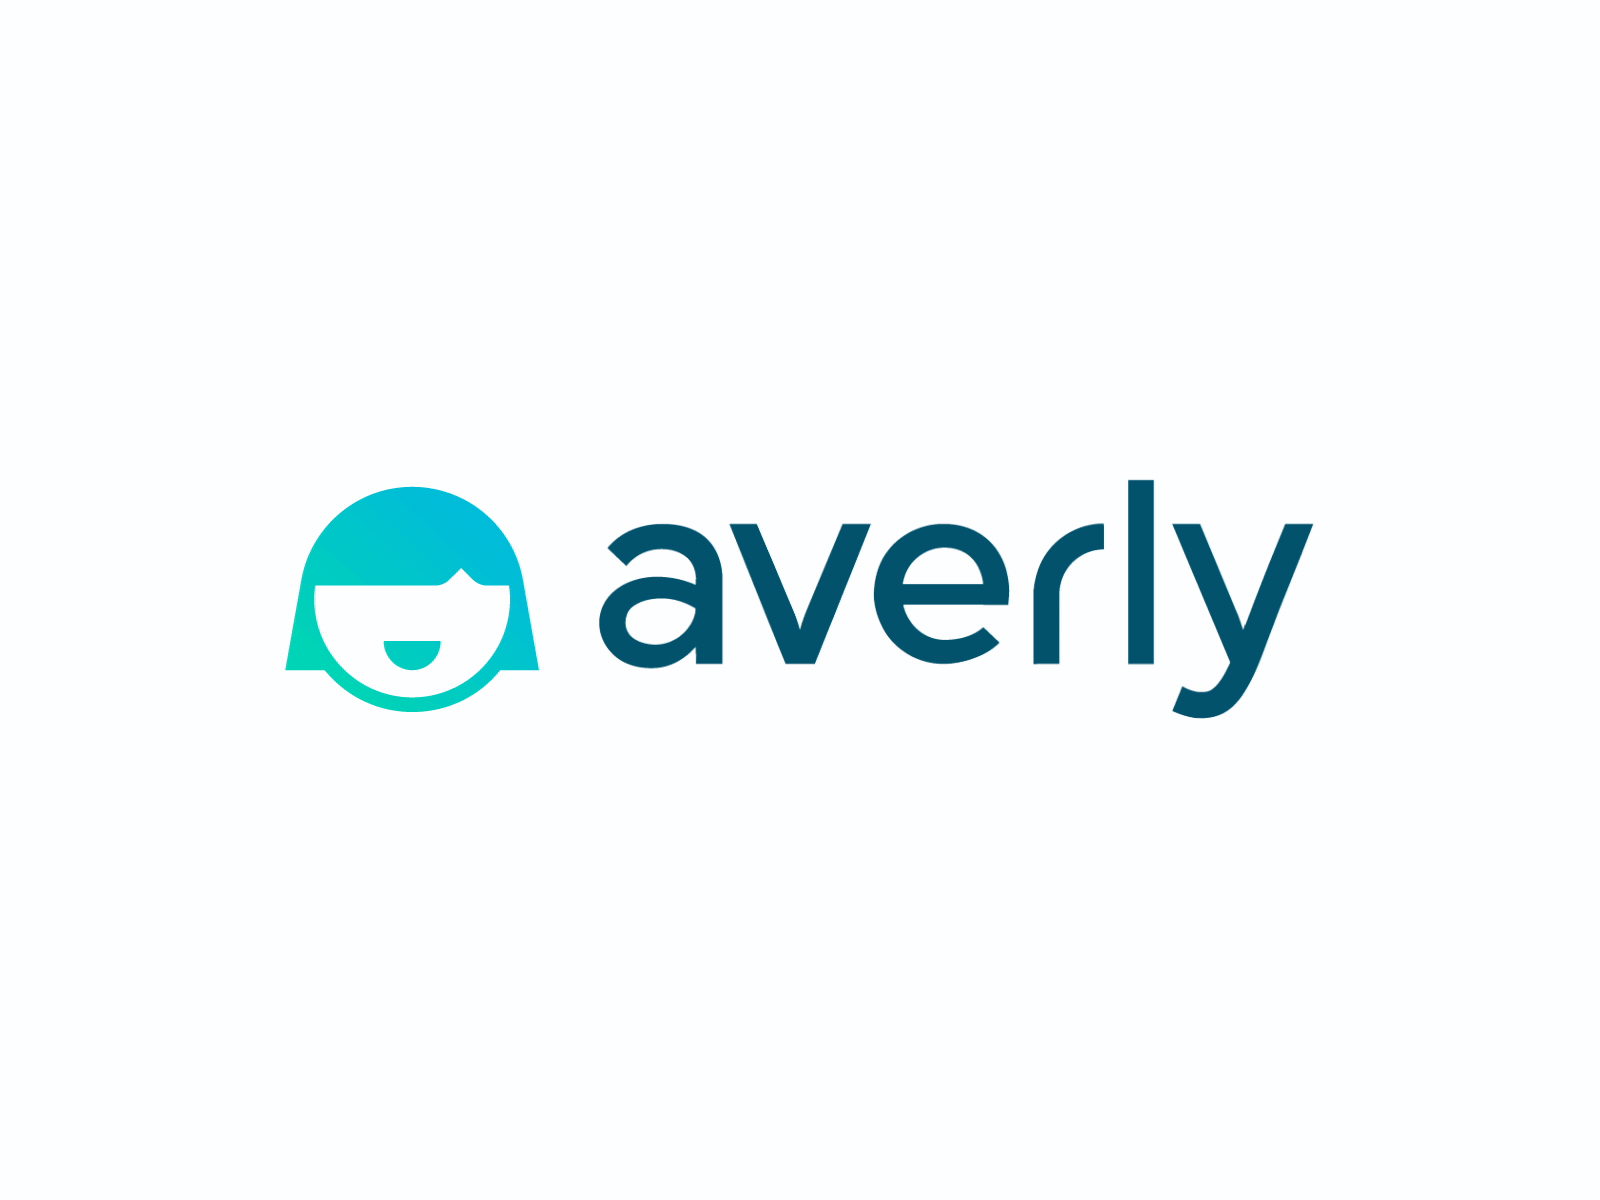 Averly Logo Animation